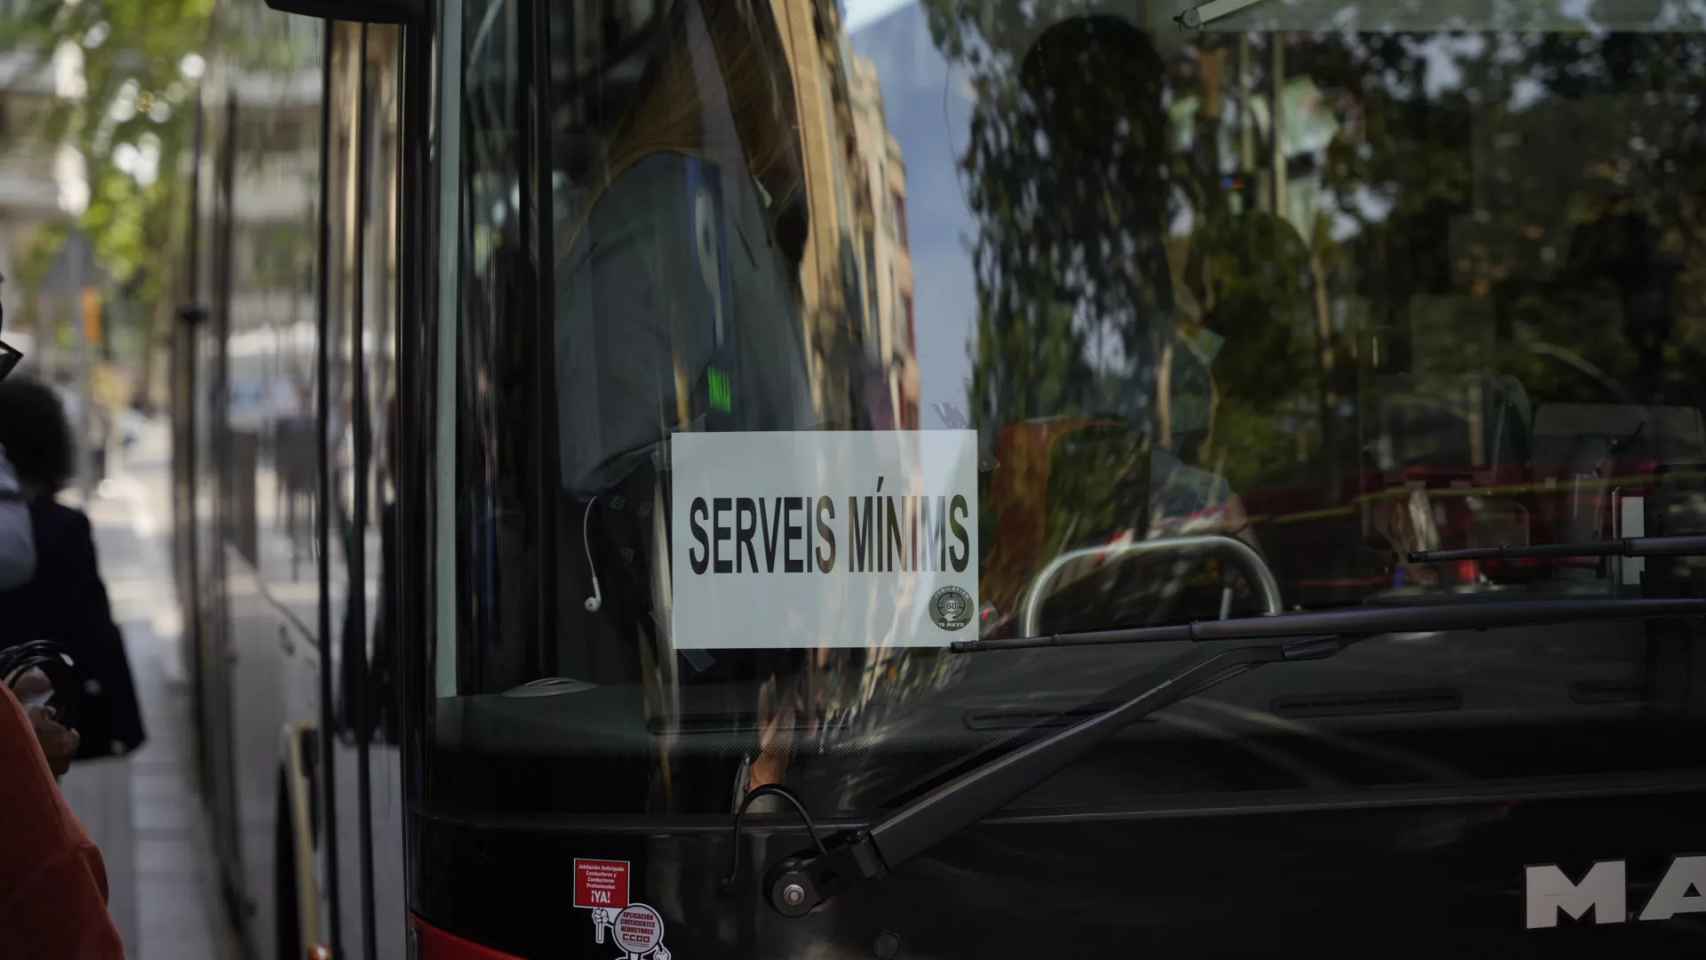 Un cartel de Servicios mínimos en un bus de Barcelona / LUIS MIGUEL AÑÓN